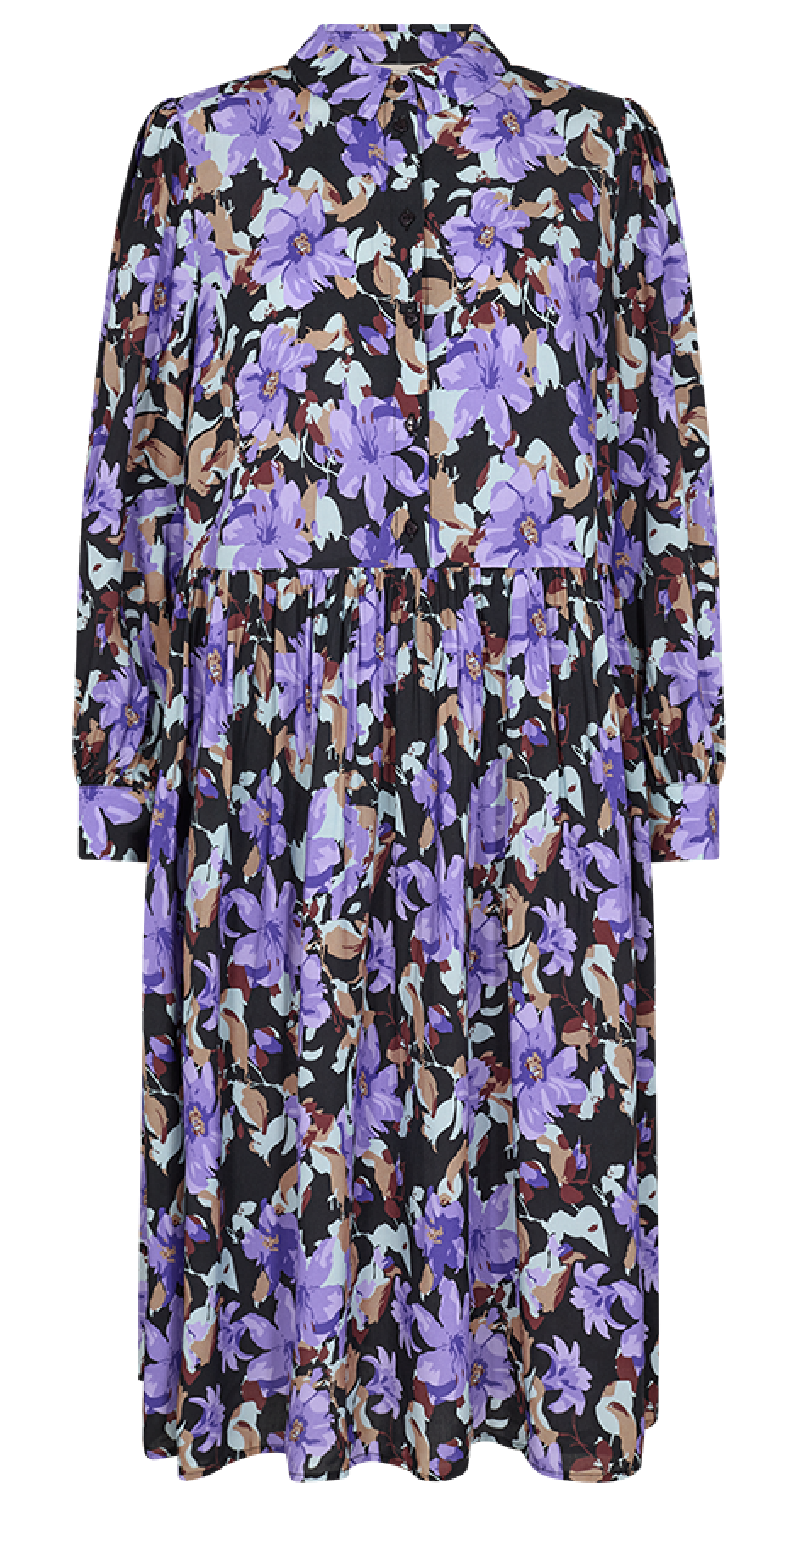 Adney kjole purple sapphire w. black